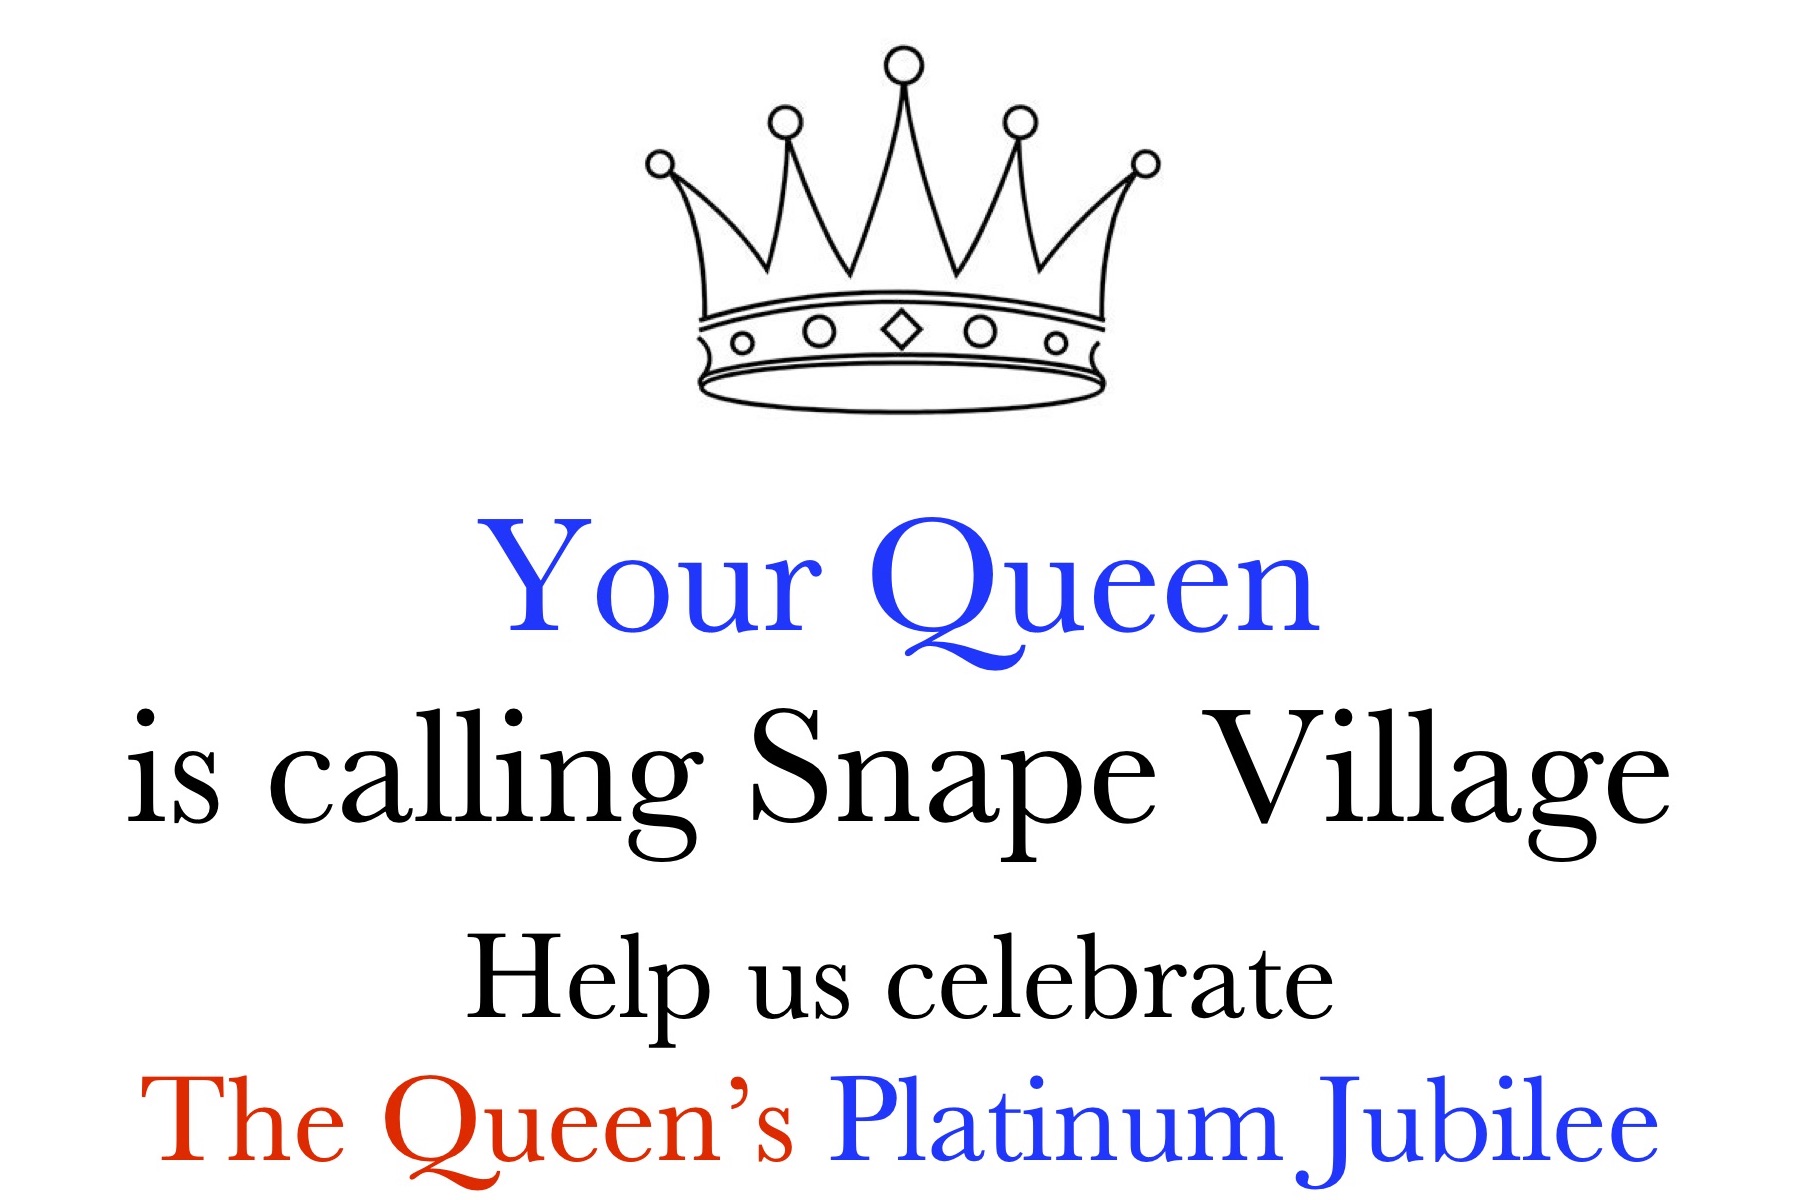 Queen's Platinum Jubilee plans